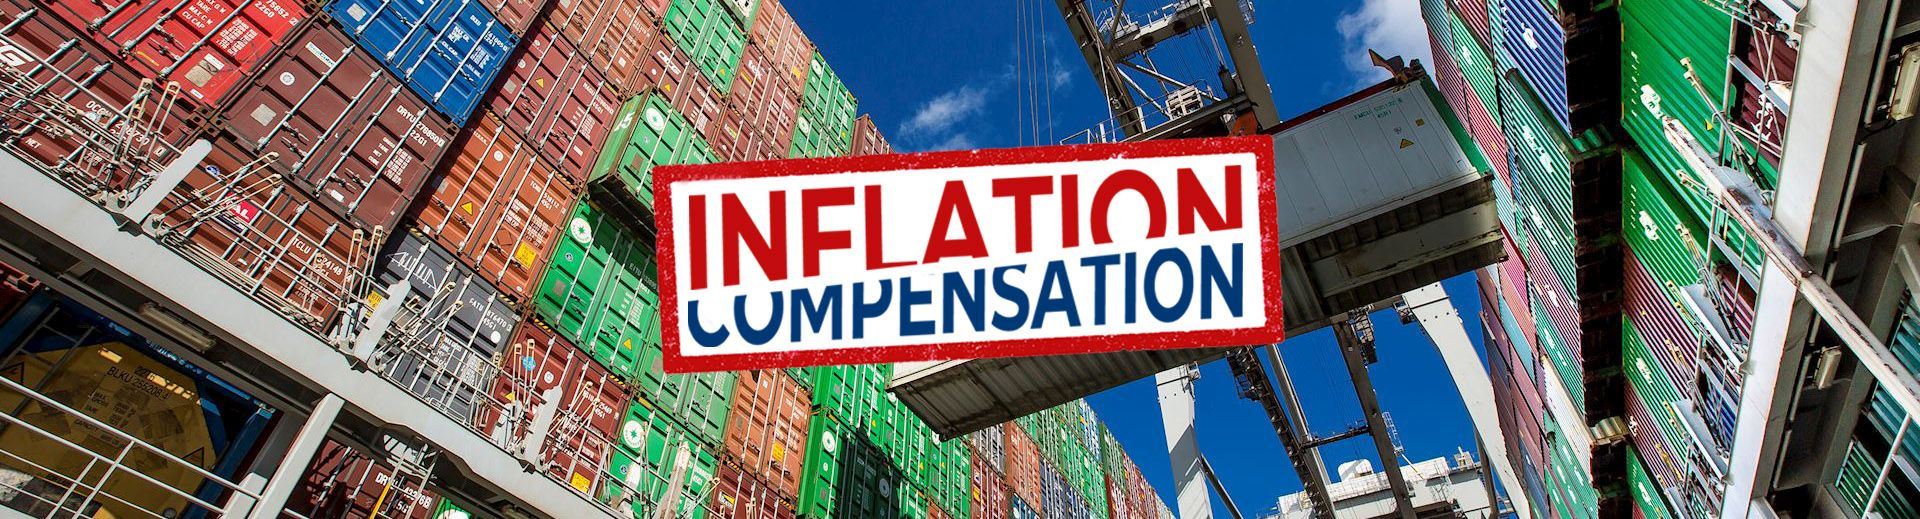 inflation-compensation-v1